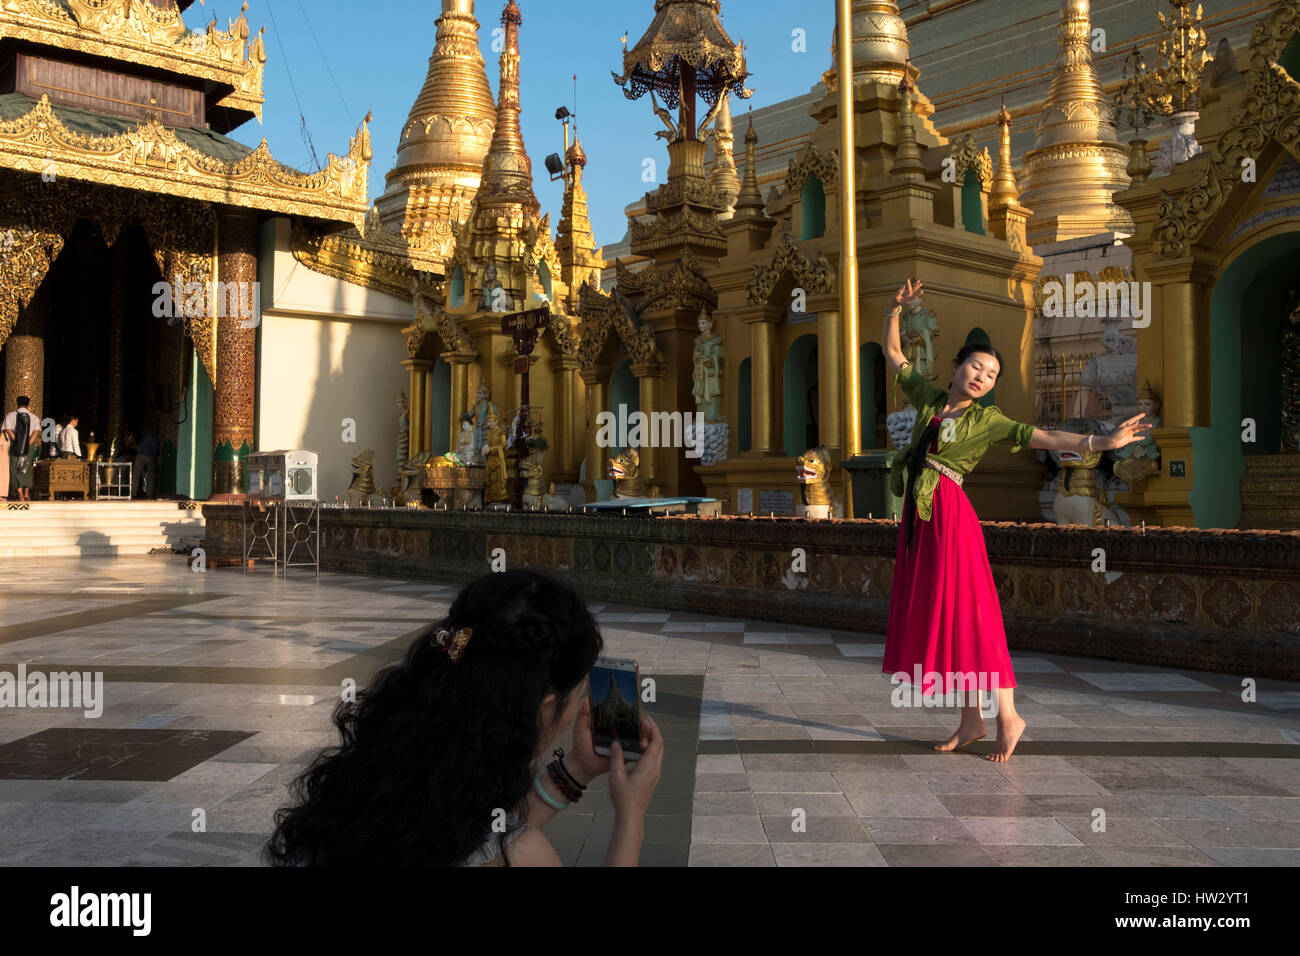 Eine Frau wirft in einem Tanz, während sie auf dem Handy an der Shwedagon-Pagode in Yangon, Region Yangon, Myanmar gefilmt wird Stockfoto